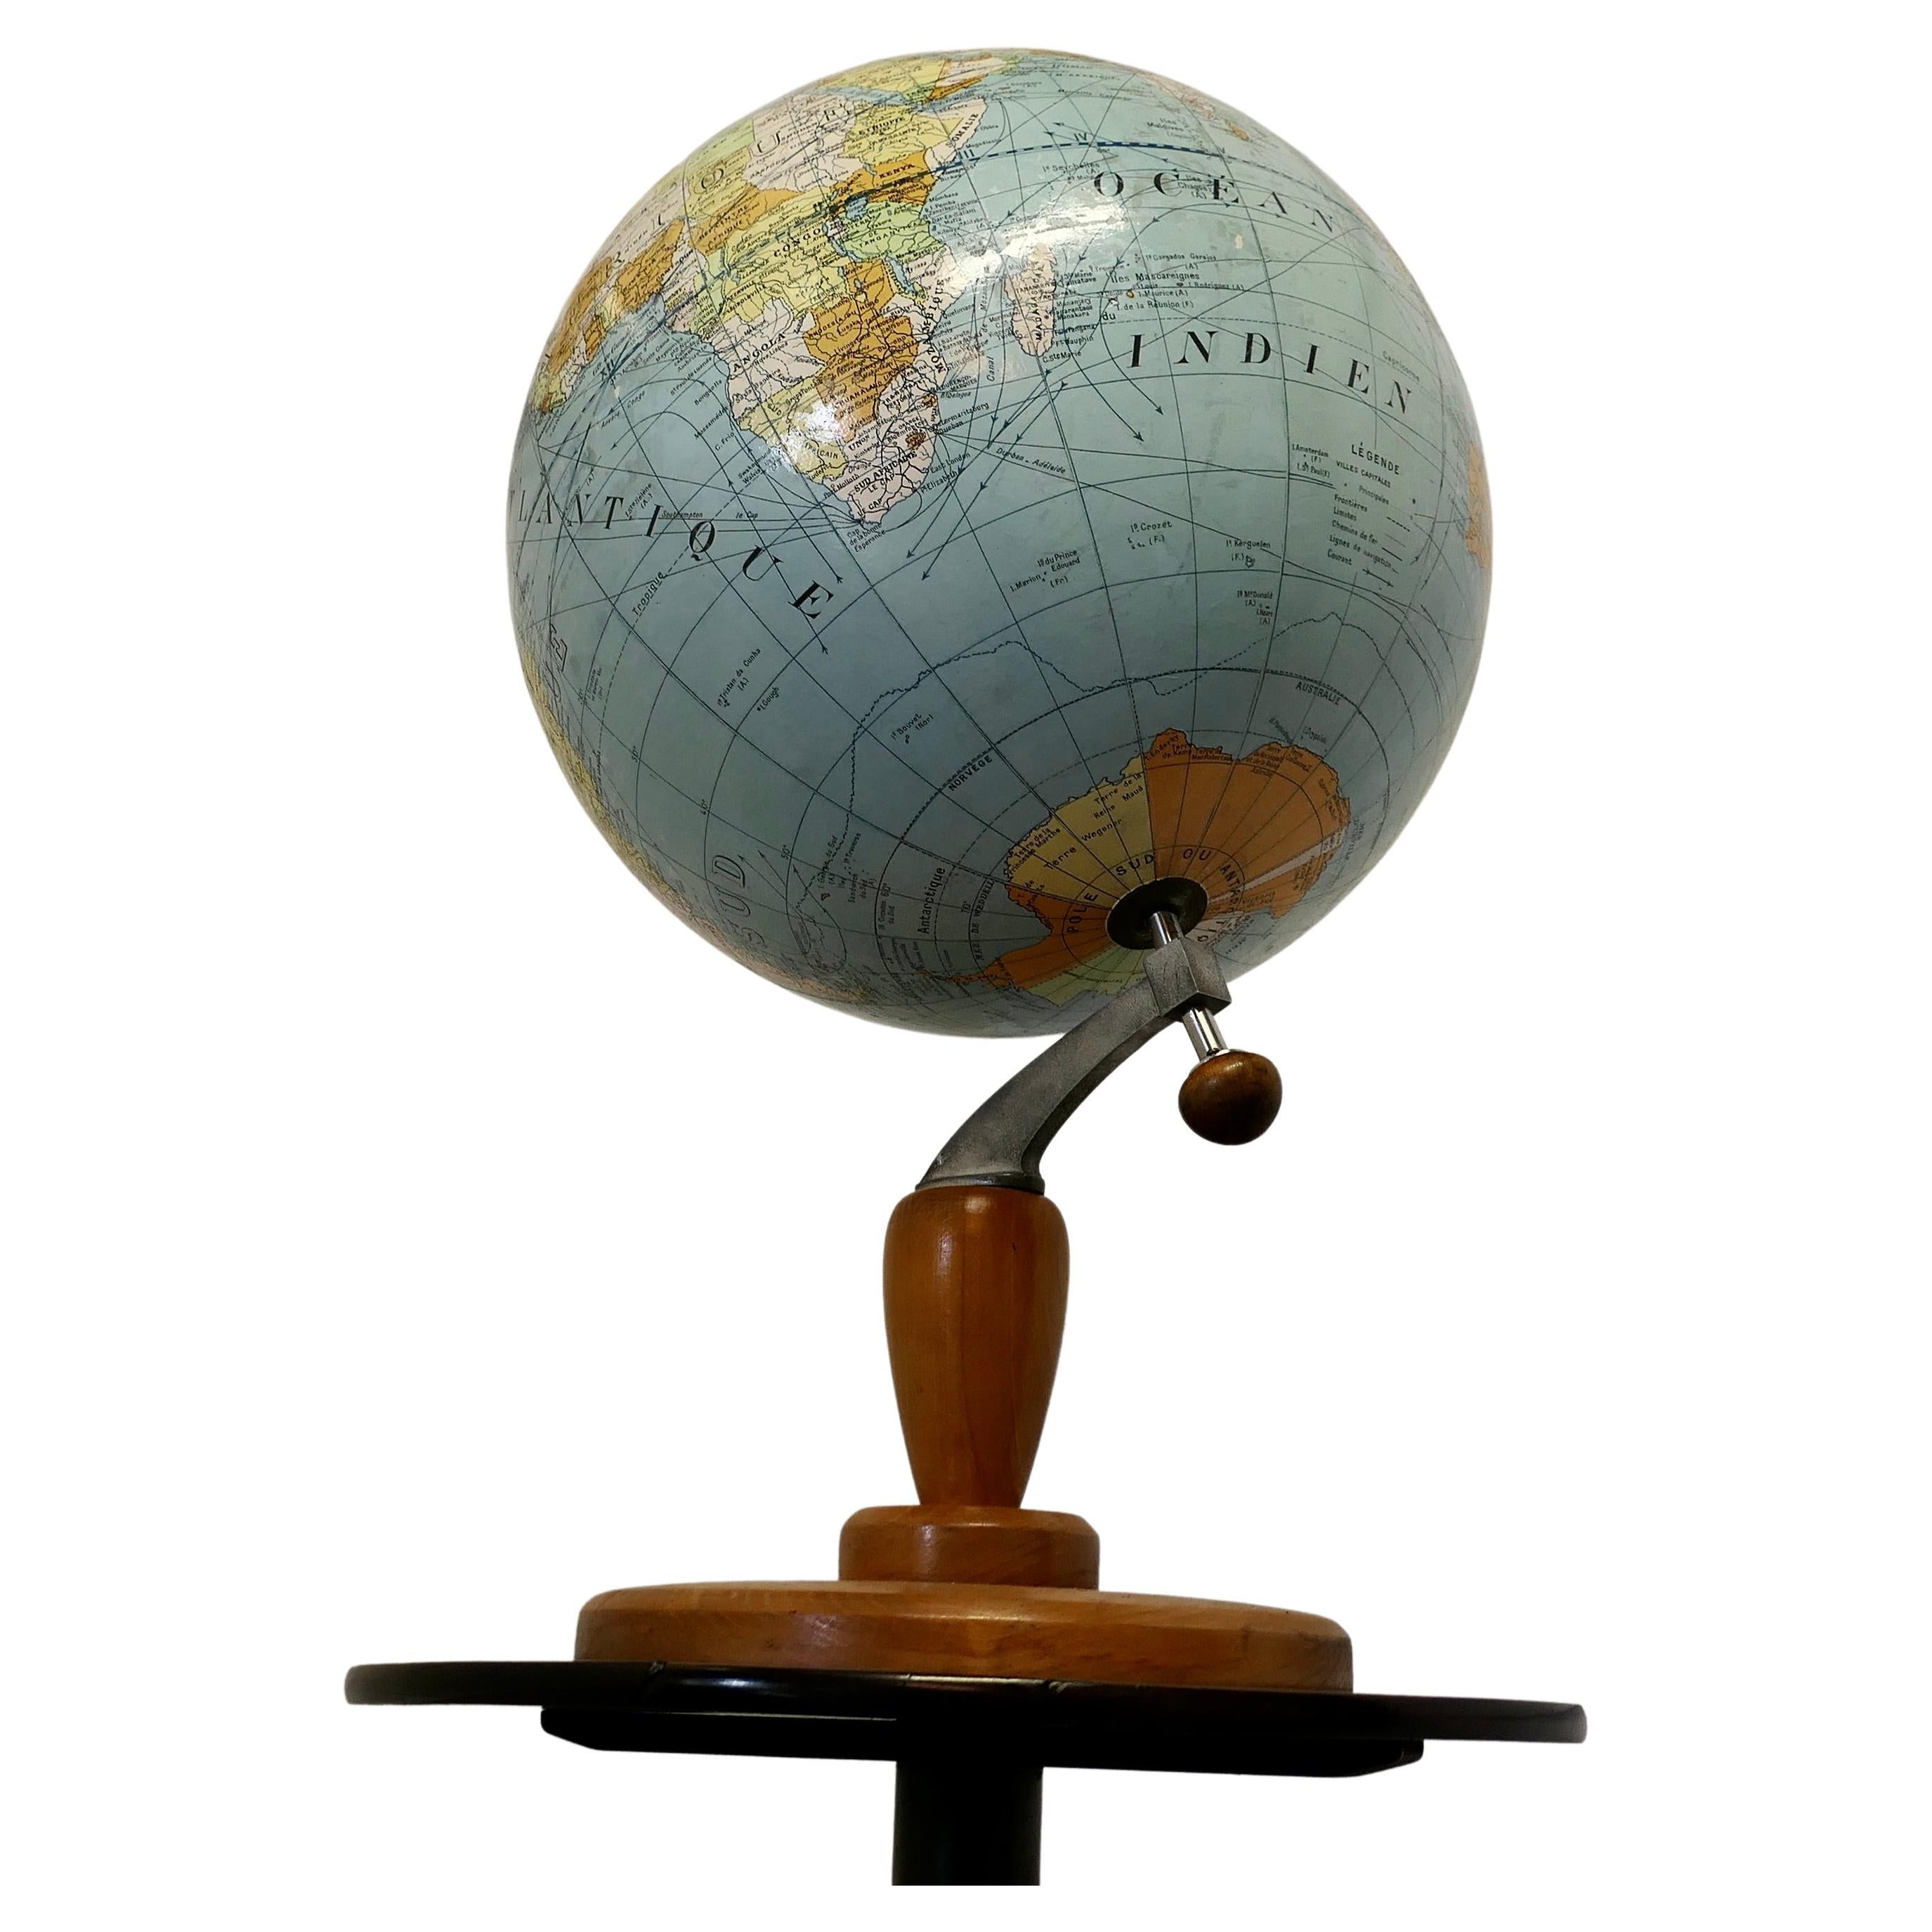 Grand globe terrestre ou atlas mondial français de Girard et Barrère.


Il s'agit d'un très grand globe terrestre français de style des années 1930 par Girard et Barrère ; il comporte des cartes territoriales, des courants océaniques et des